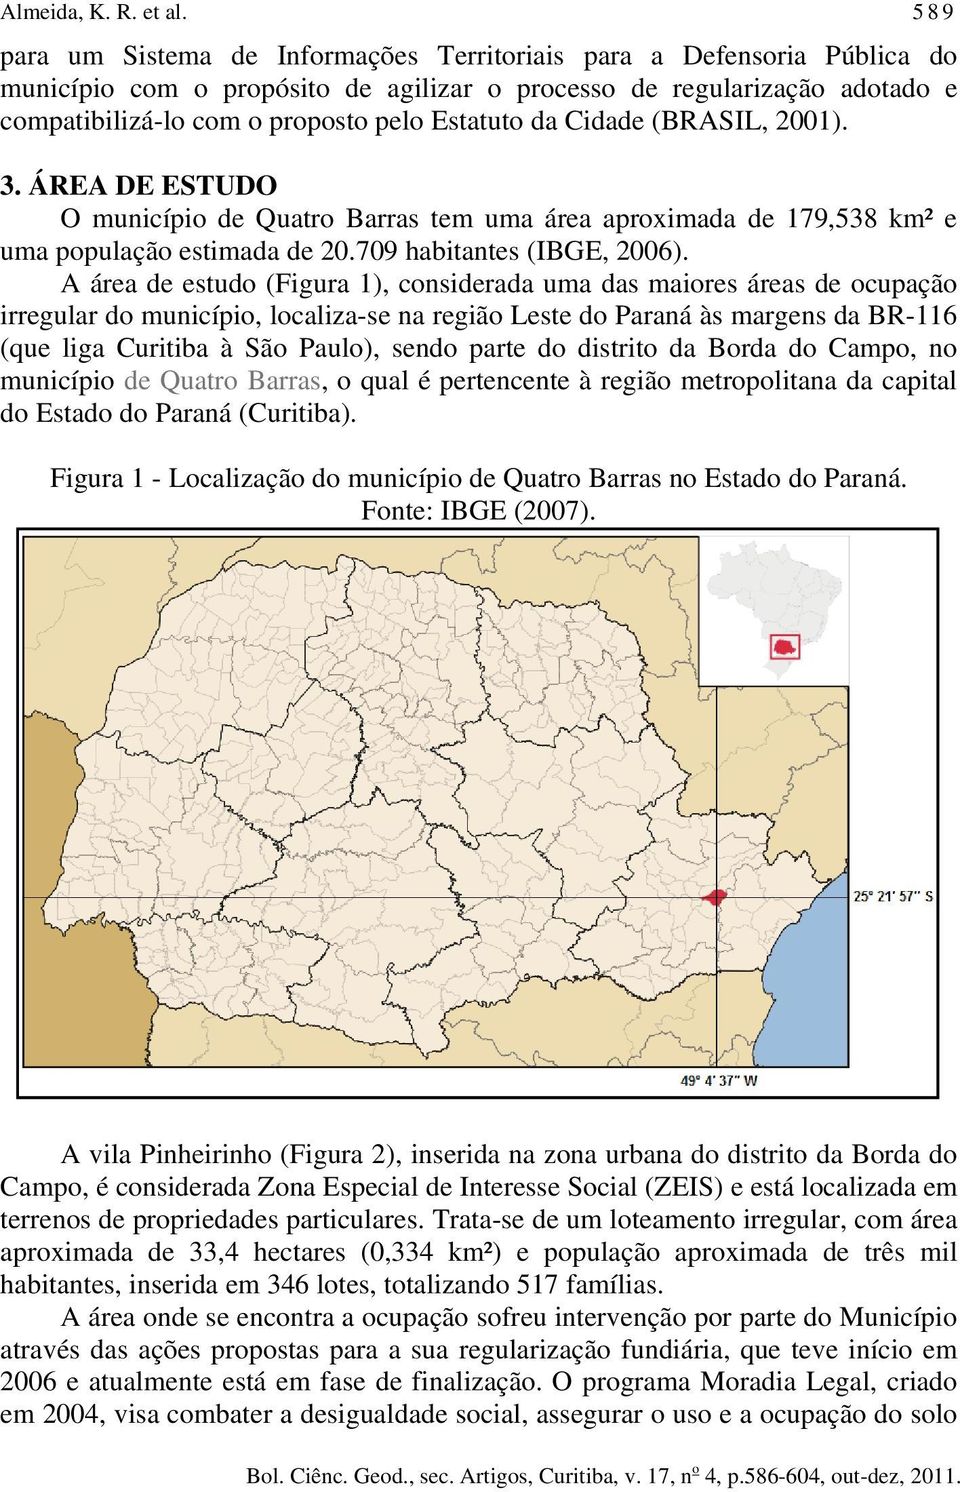 Cidade (BRASIL, 2001). 3. ÁREA DE ESTUDO O município de Quatro Barras tem uma área aproximada de 179,538 km² e uma população estimada de 20.709 habitantes (IBGE, 2006).